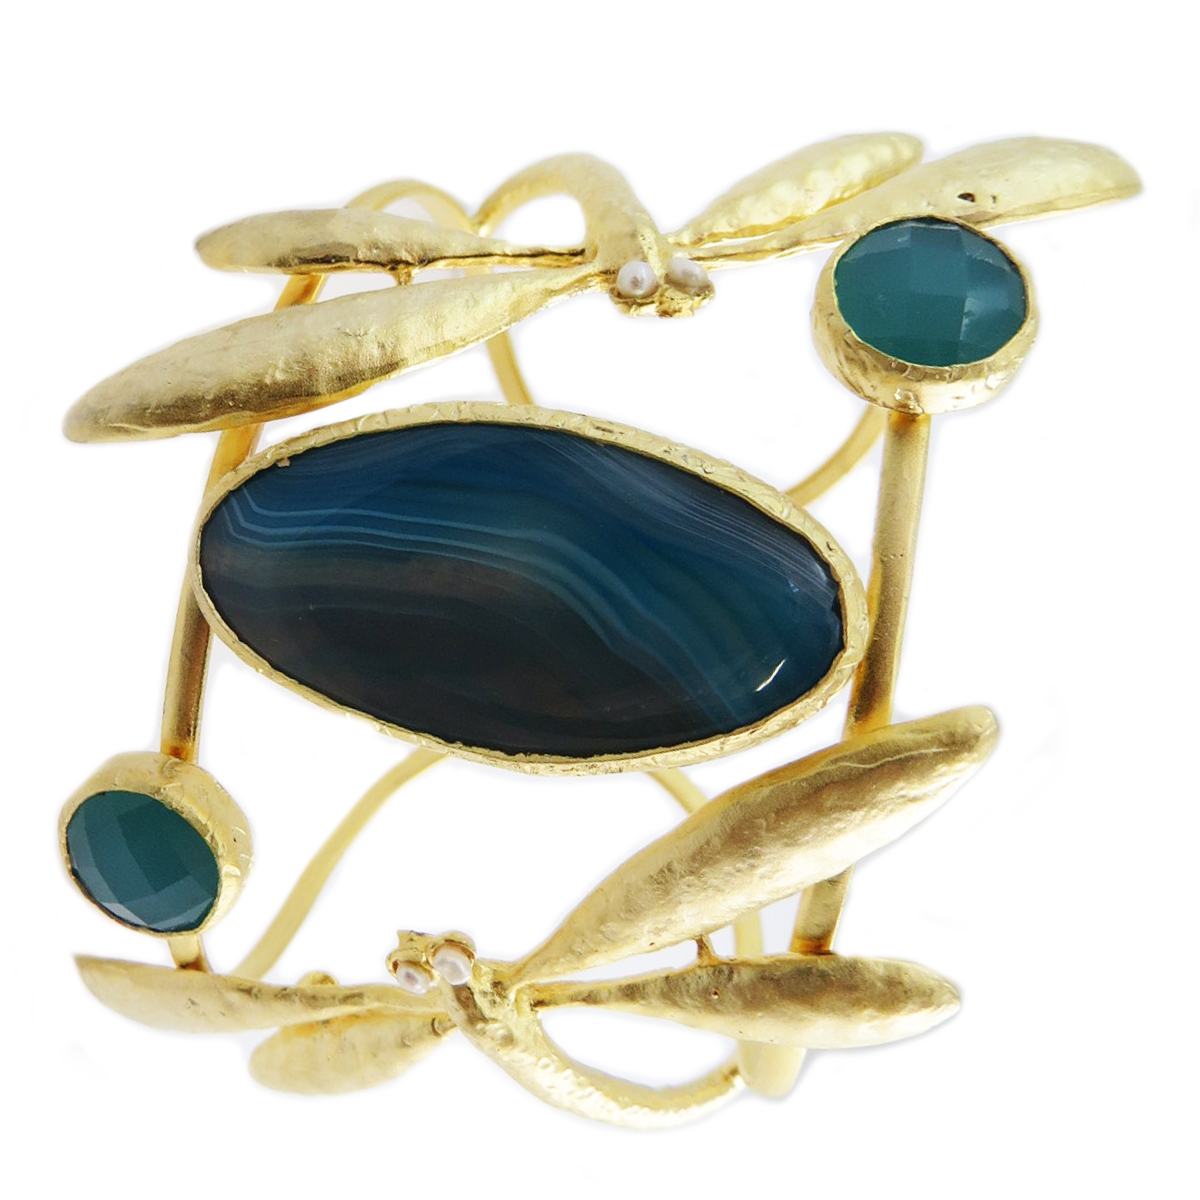 Bracelet artisanal \'Cléopatra\' turquoise doré (libellules) - 60 mm 60 mm - [Q5605]